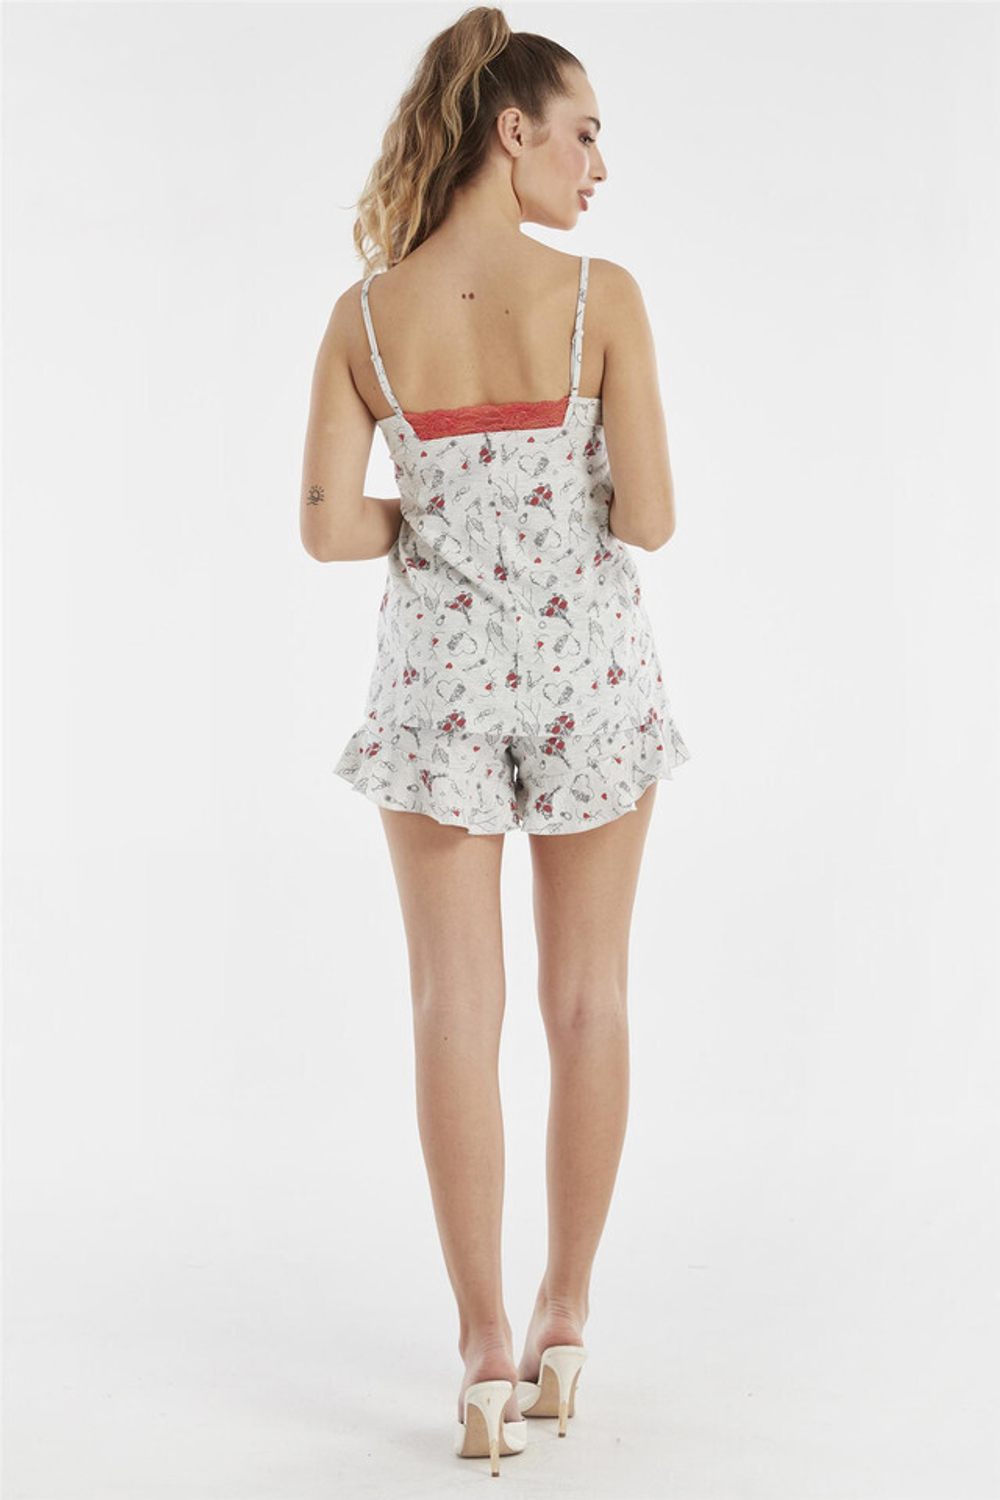 RELAX MODE / Пижама женская с шортами и топом хлопок одежда для дома - 13109